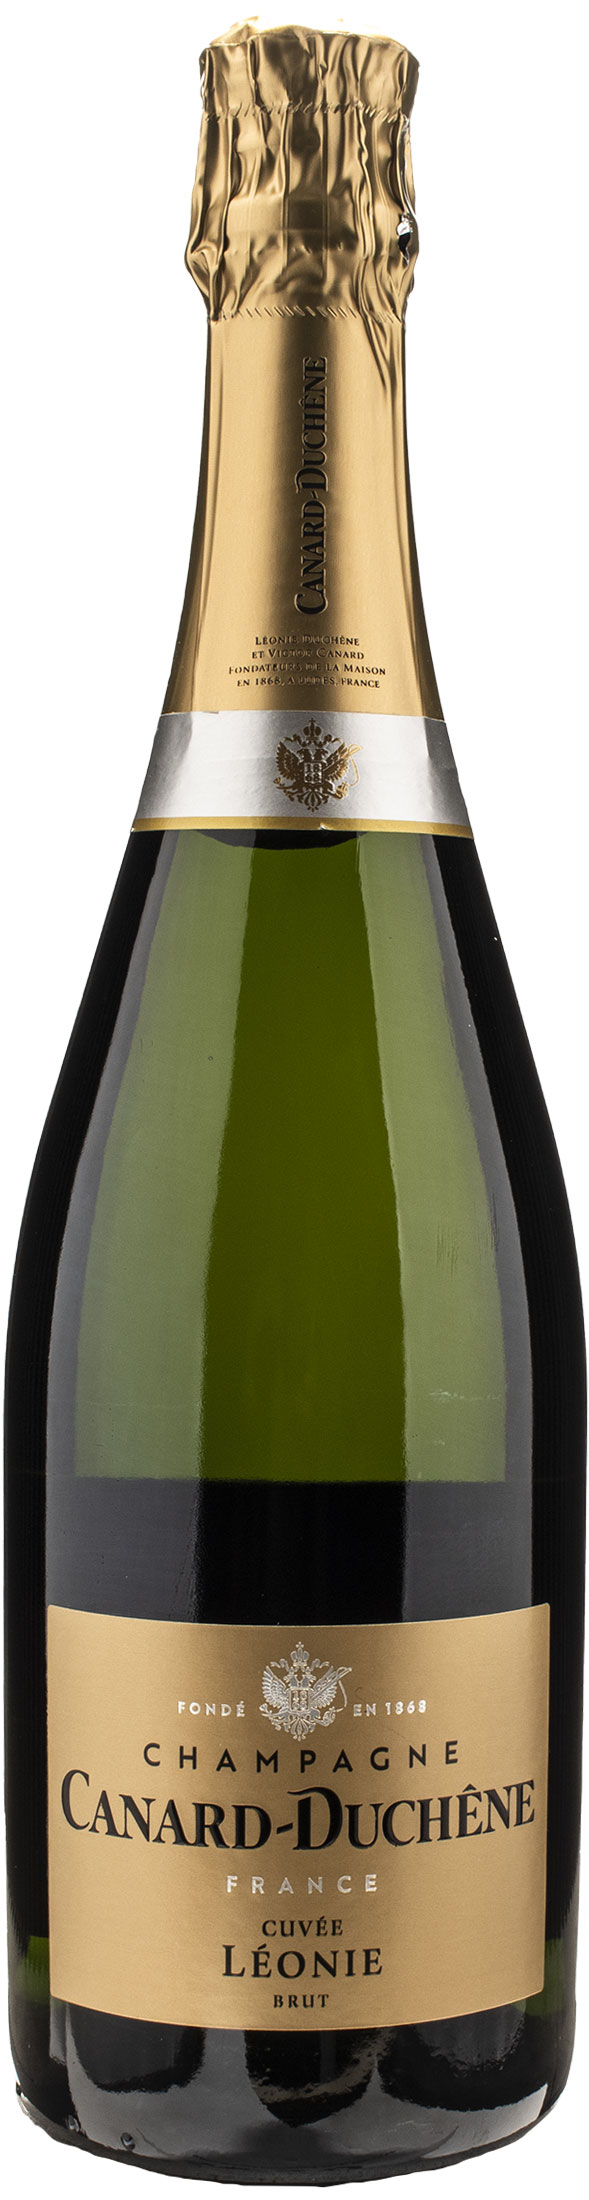 Canard Duchene Champagne Cuvèe Brut Leonie